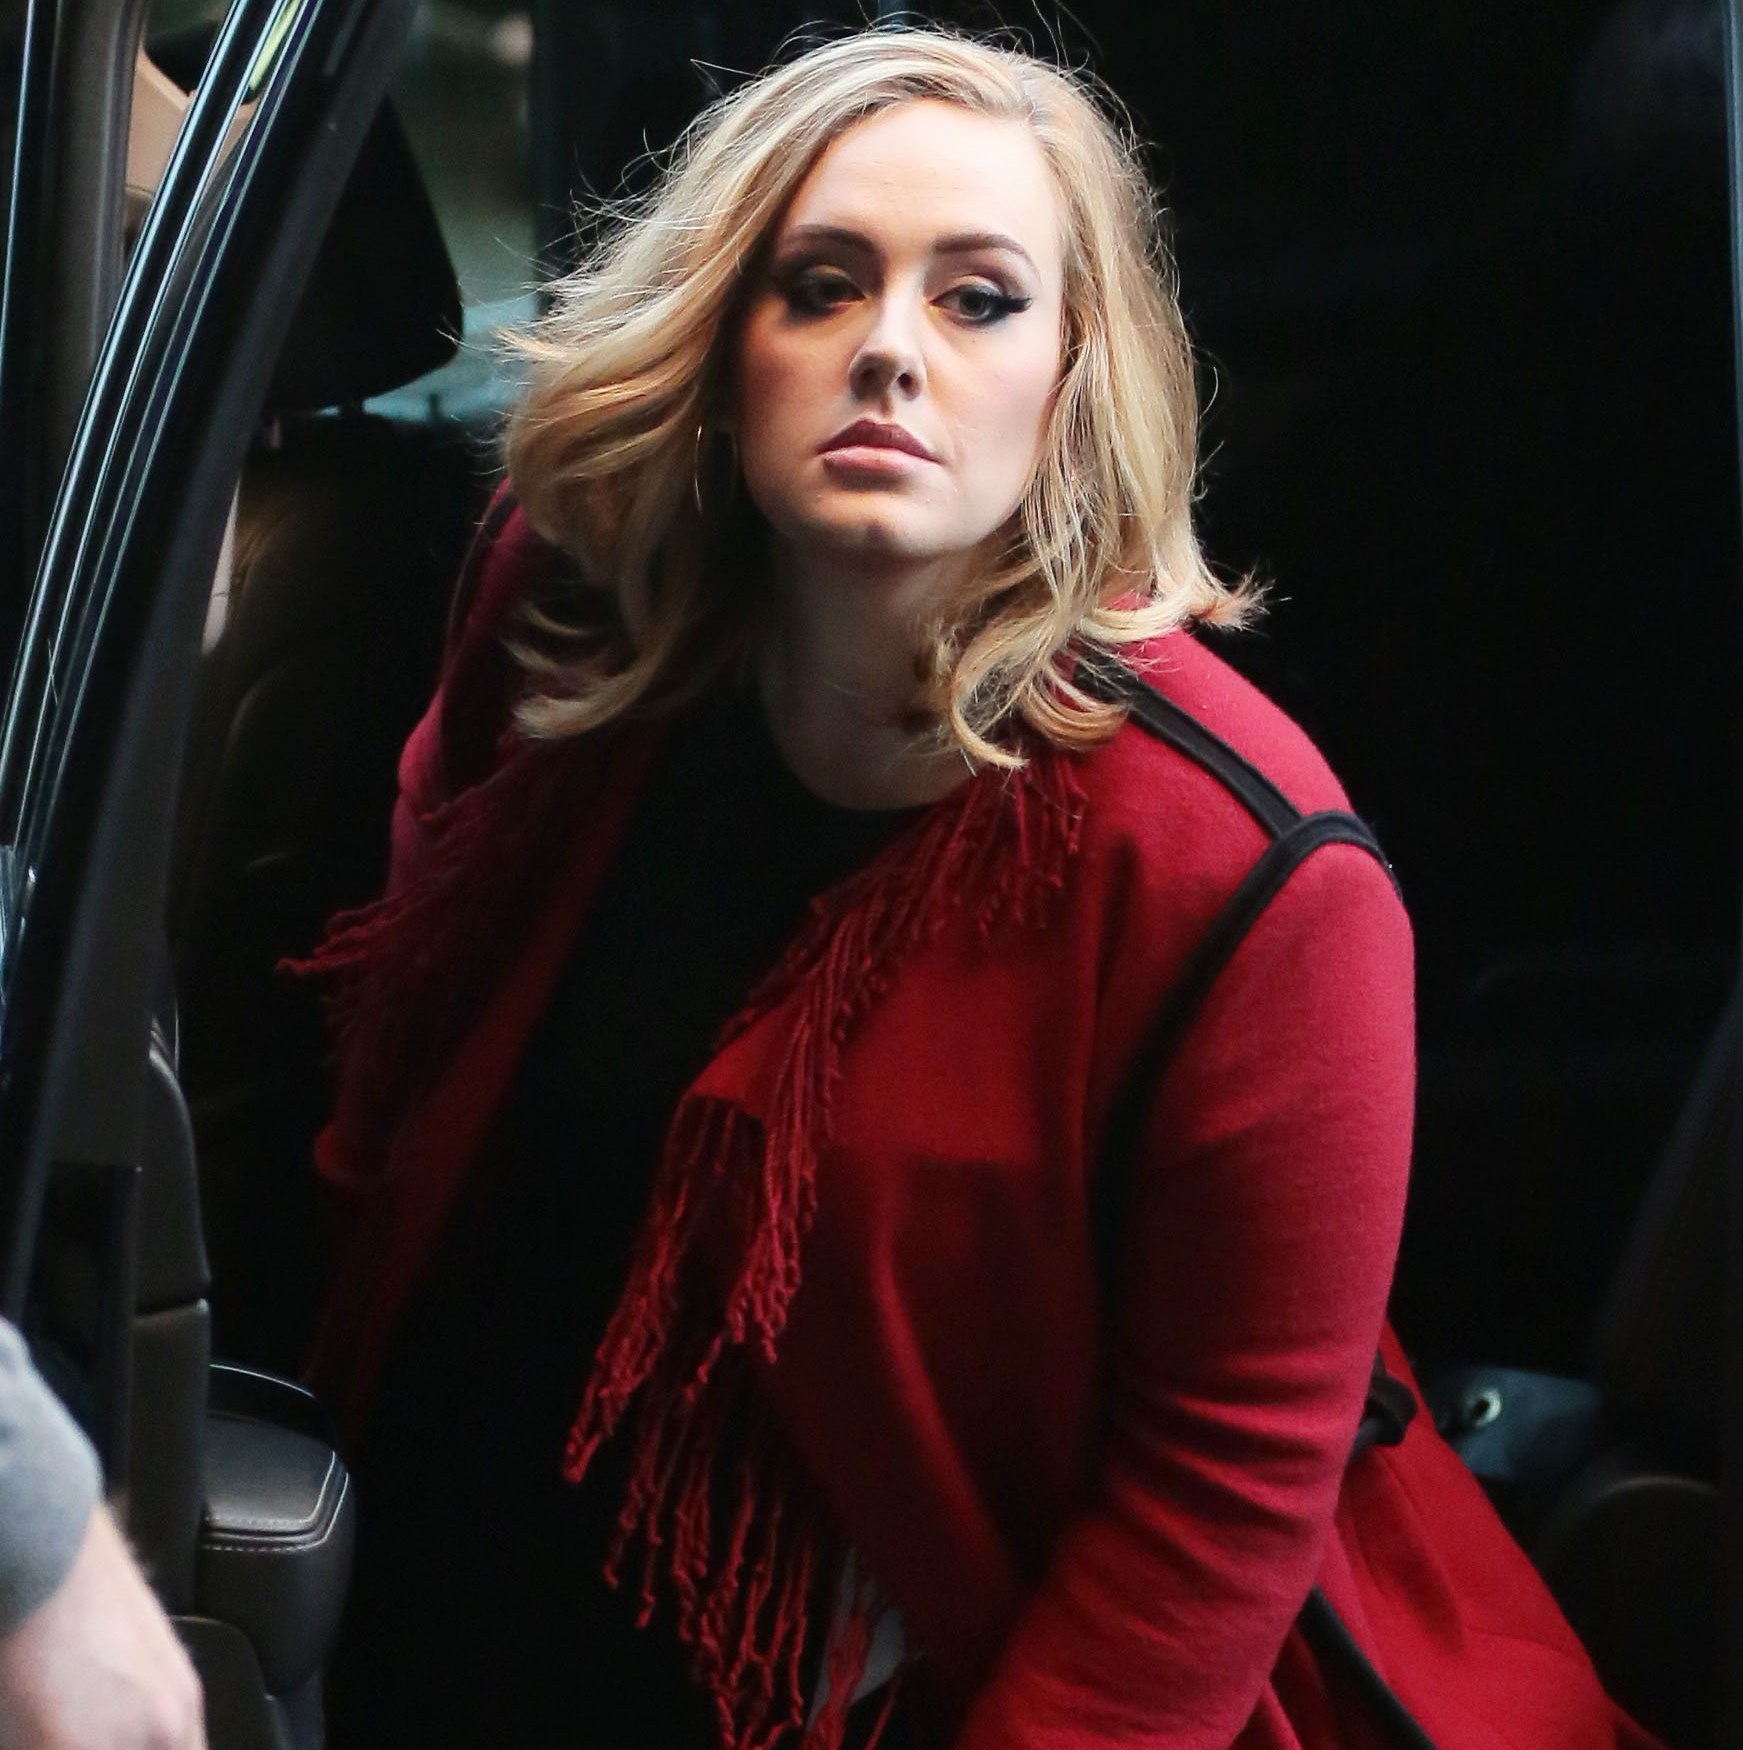 FOTO: Adele și-a schimbat look-ul. Uite cum arată părul ei acum!